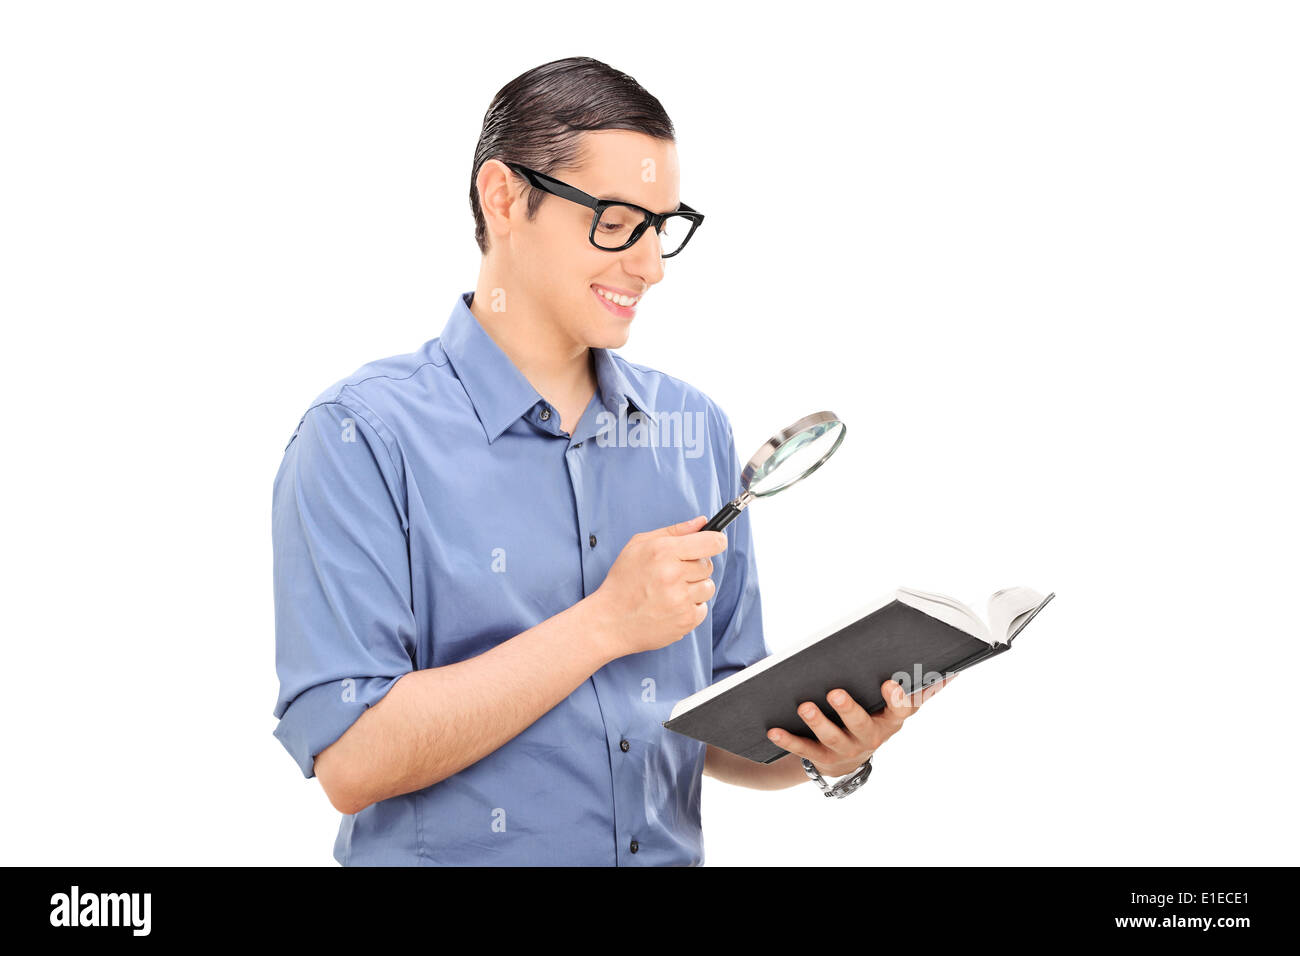 Guy reading a book through a scrutiny Stock Photo